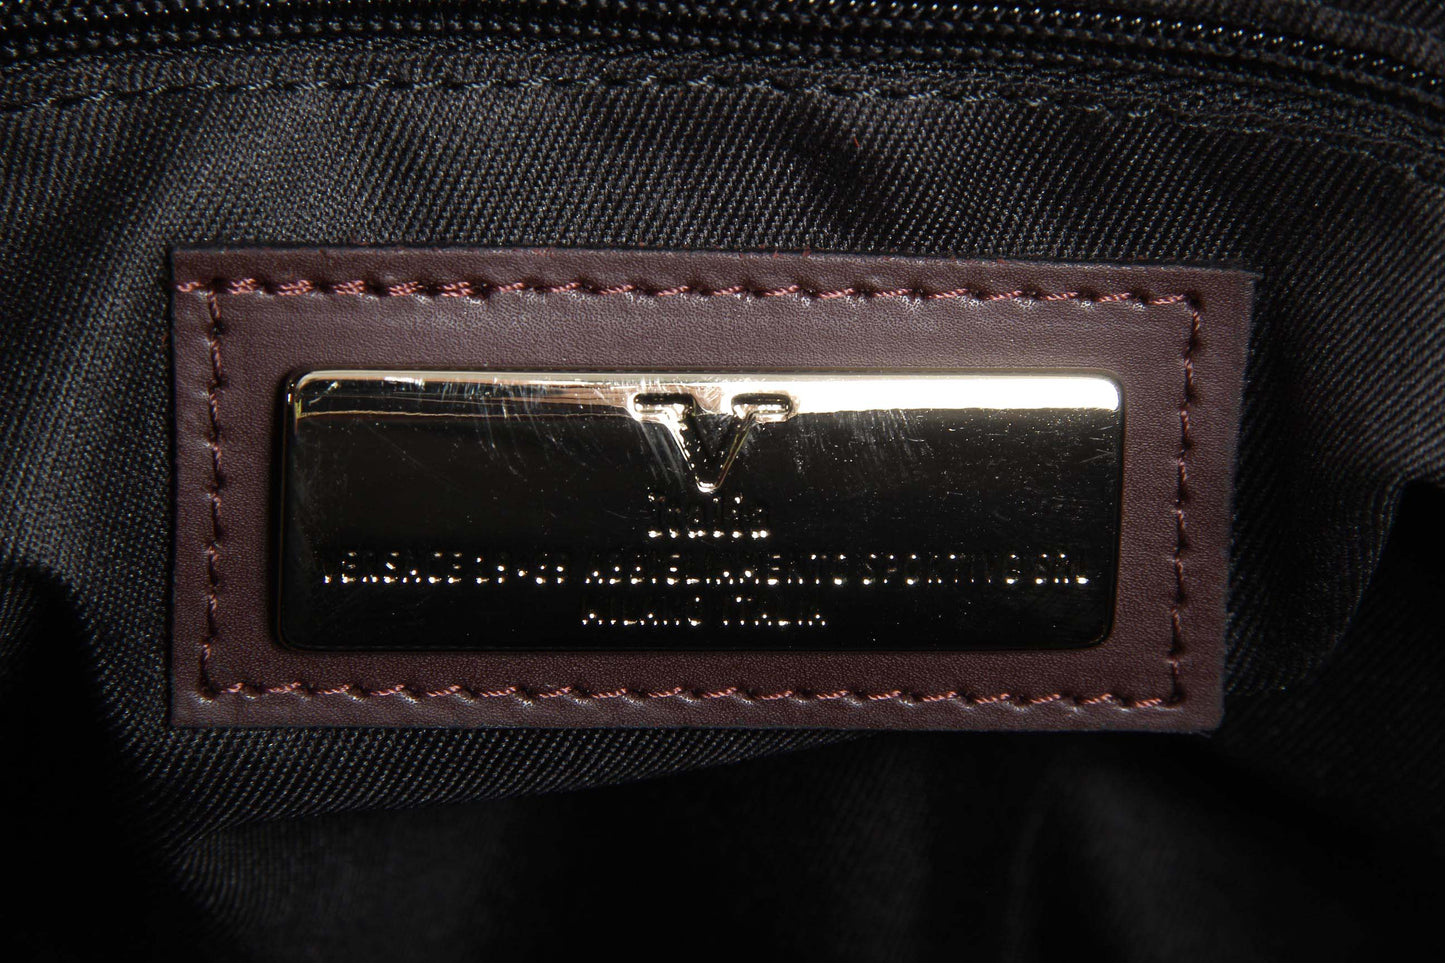 By Versace 19.69 Abbigliamento Sportivo Srl Milano Italia - Dettagli: V020 RUGA BORDO' - Colore: Bordeaux - Composizione: 100% P